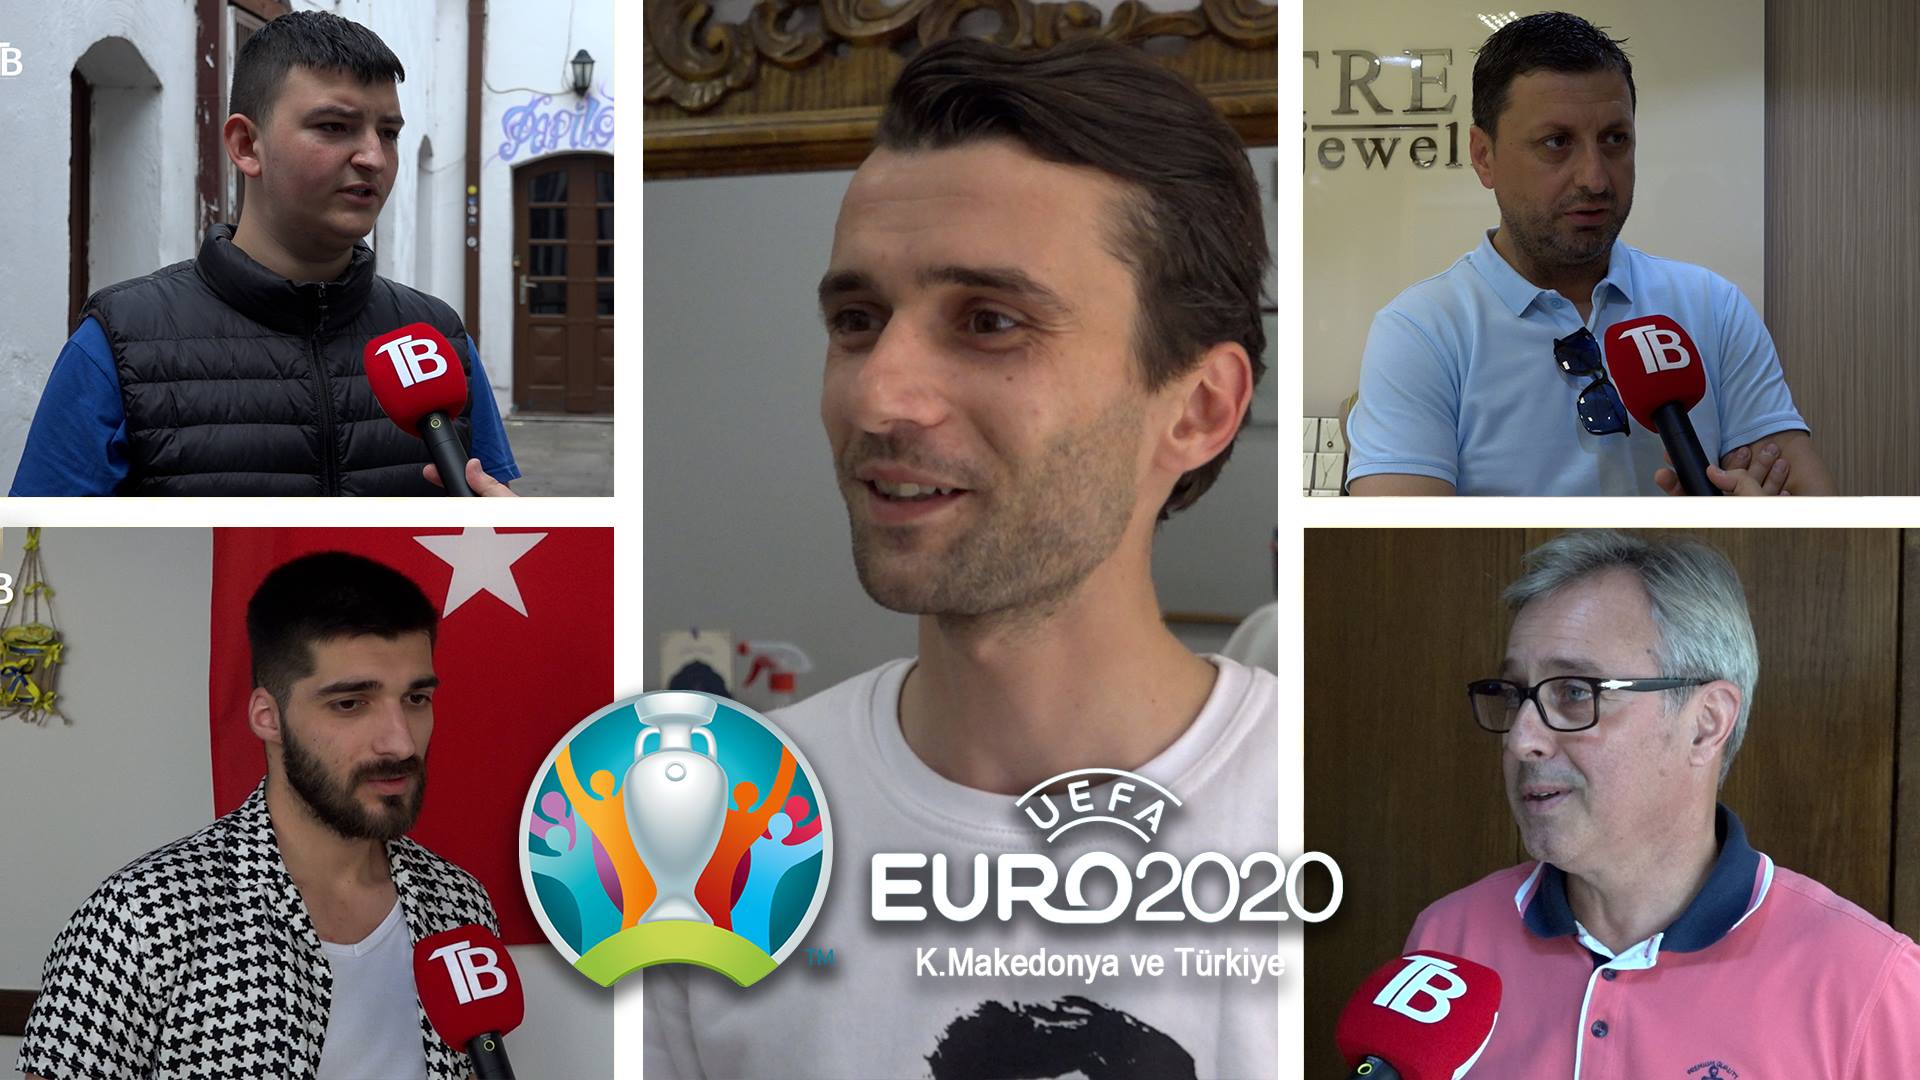 Makedonyalı vatandaşlar EURO 2020’de K. Makedonya ve Türkiye’den umutlu